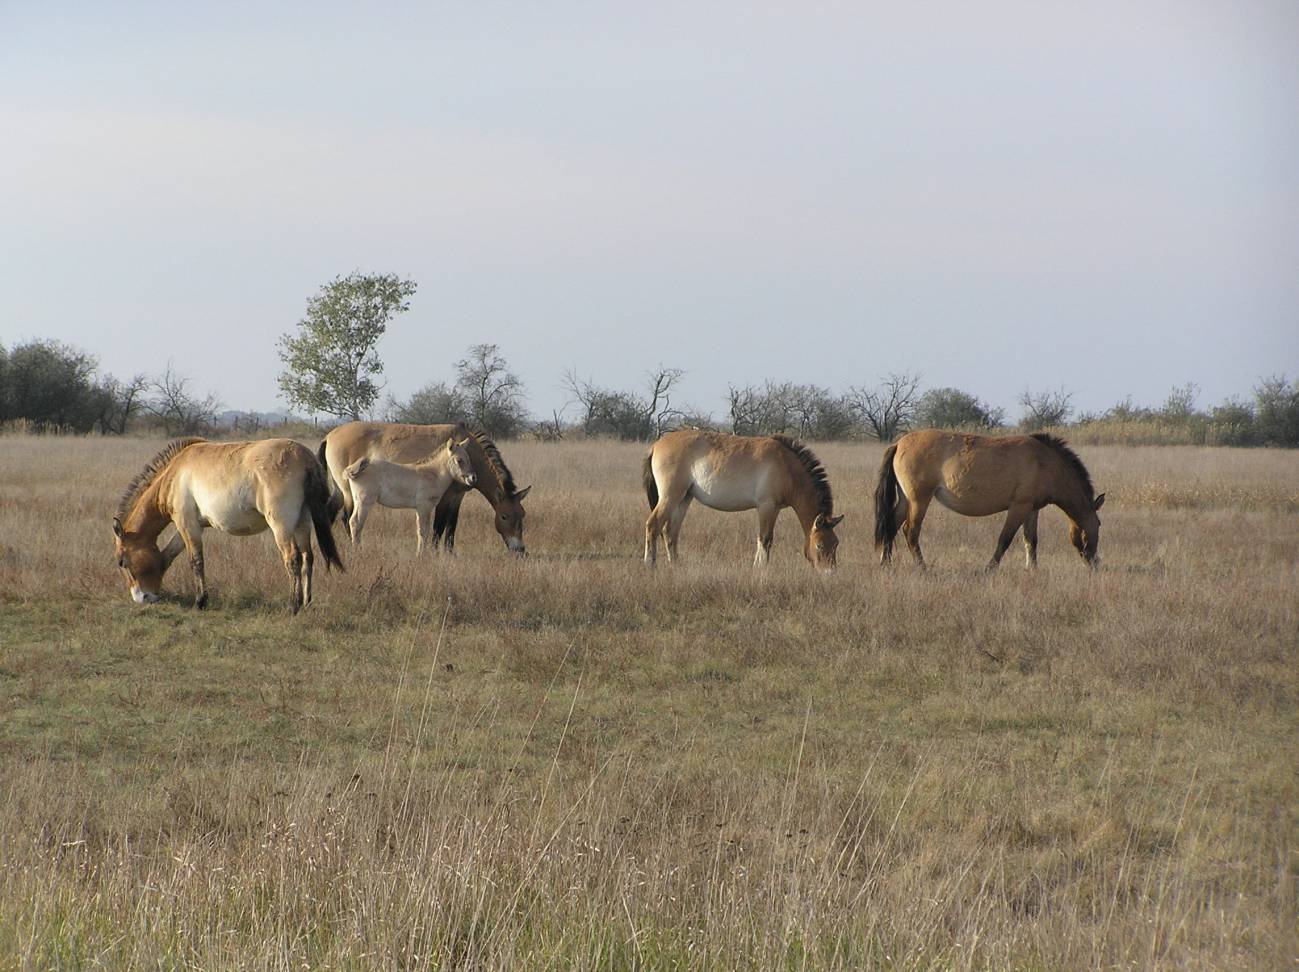 Plano general de unos caballos de 'Przewalski', el pariente silvestre más cercano del antepasado del caballo doméstico